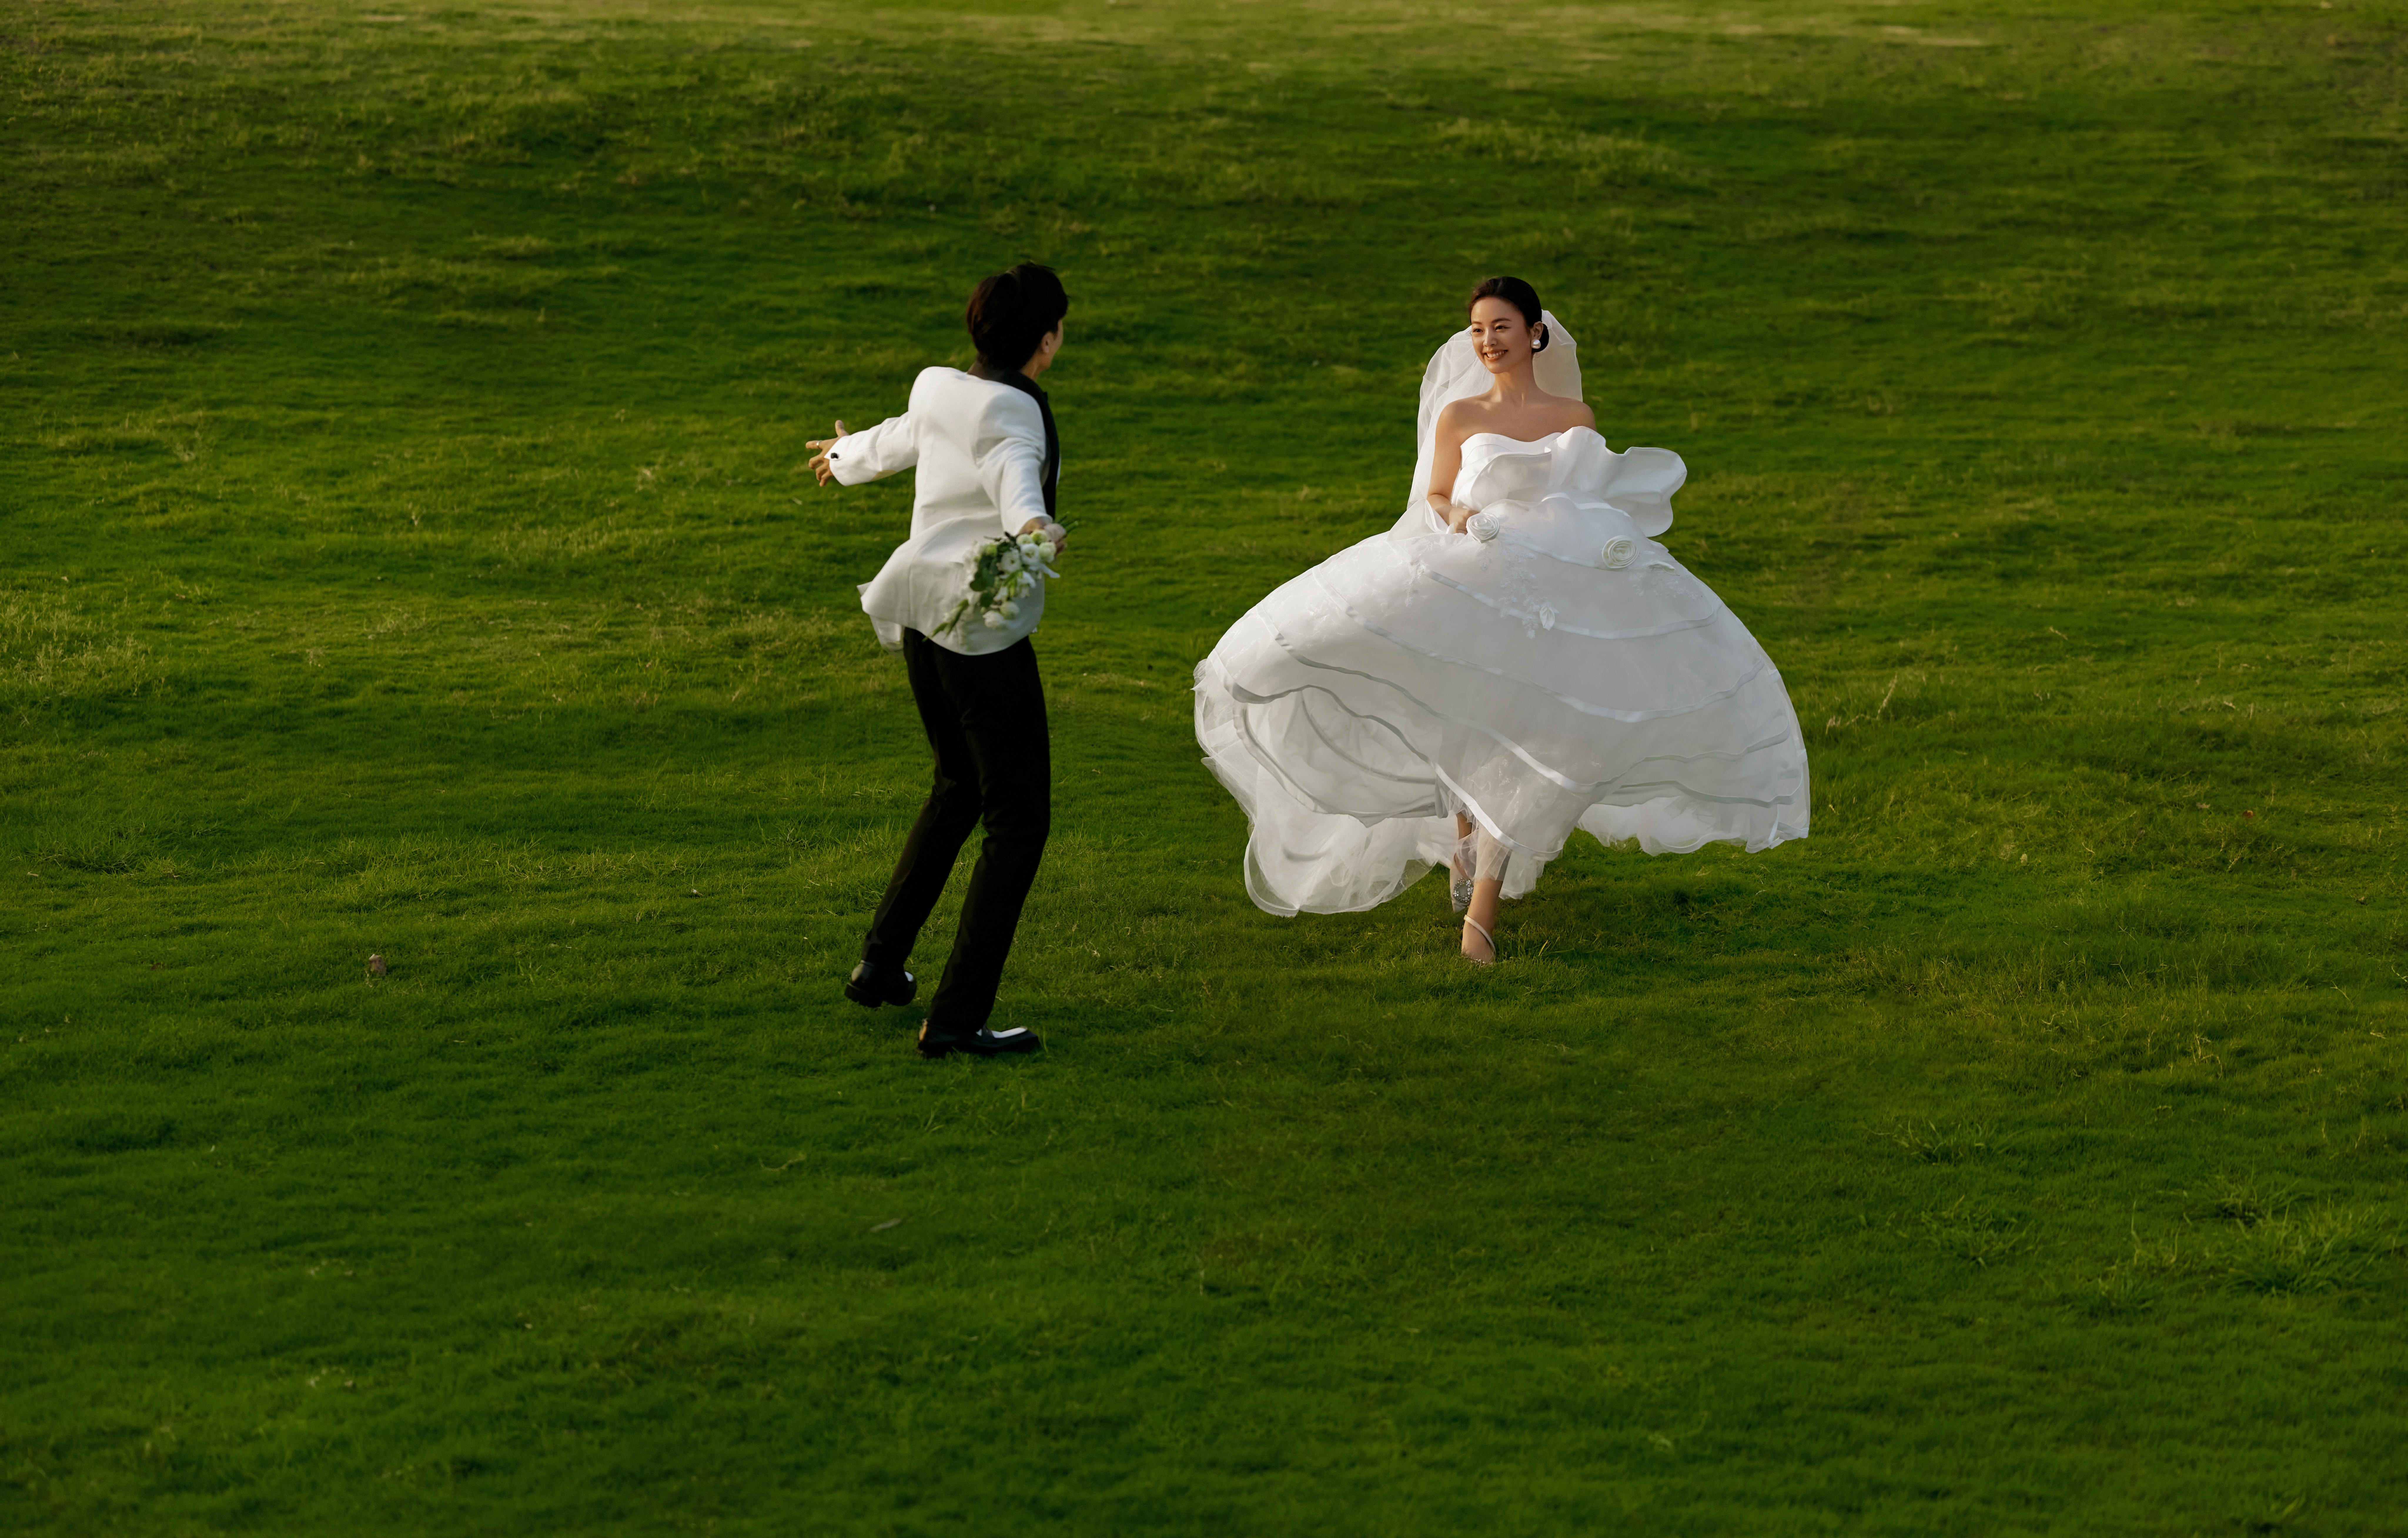 【口碑之选】创始团队拍摄 高尔夫电影风纪实婚纱照